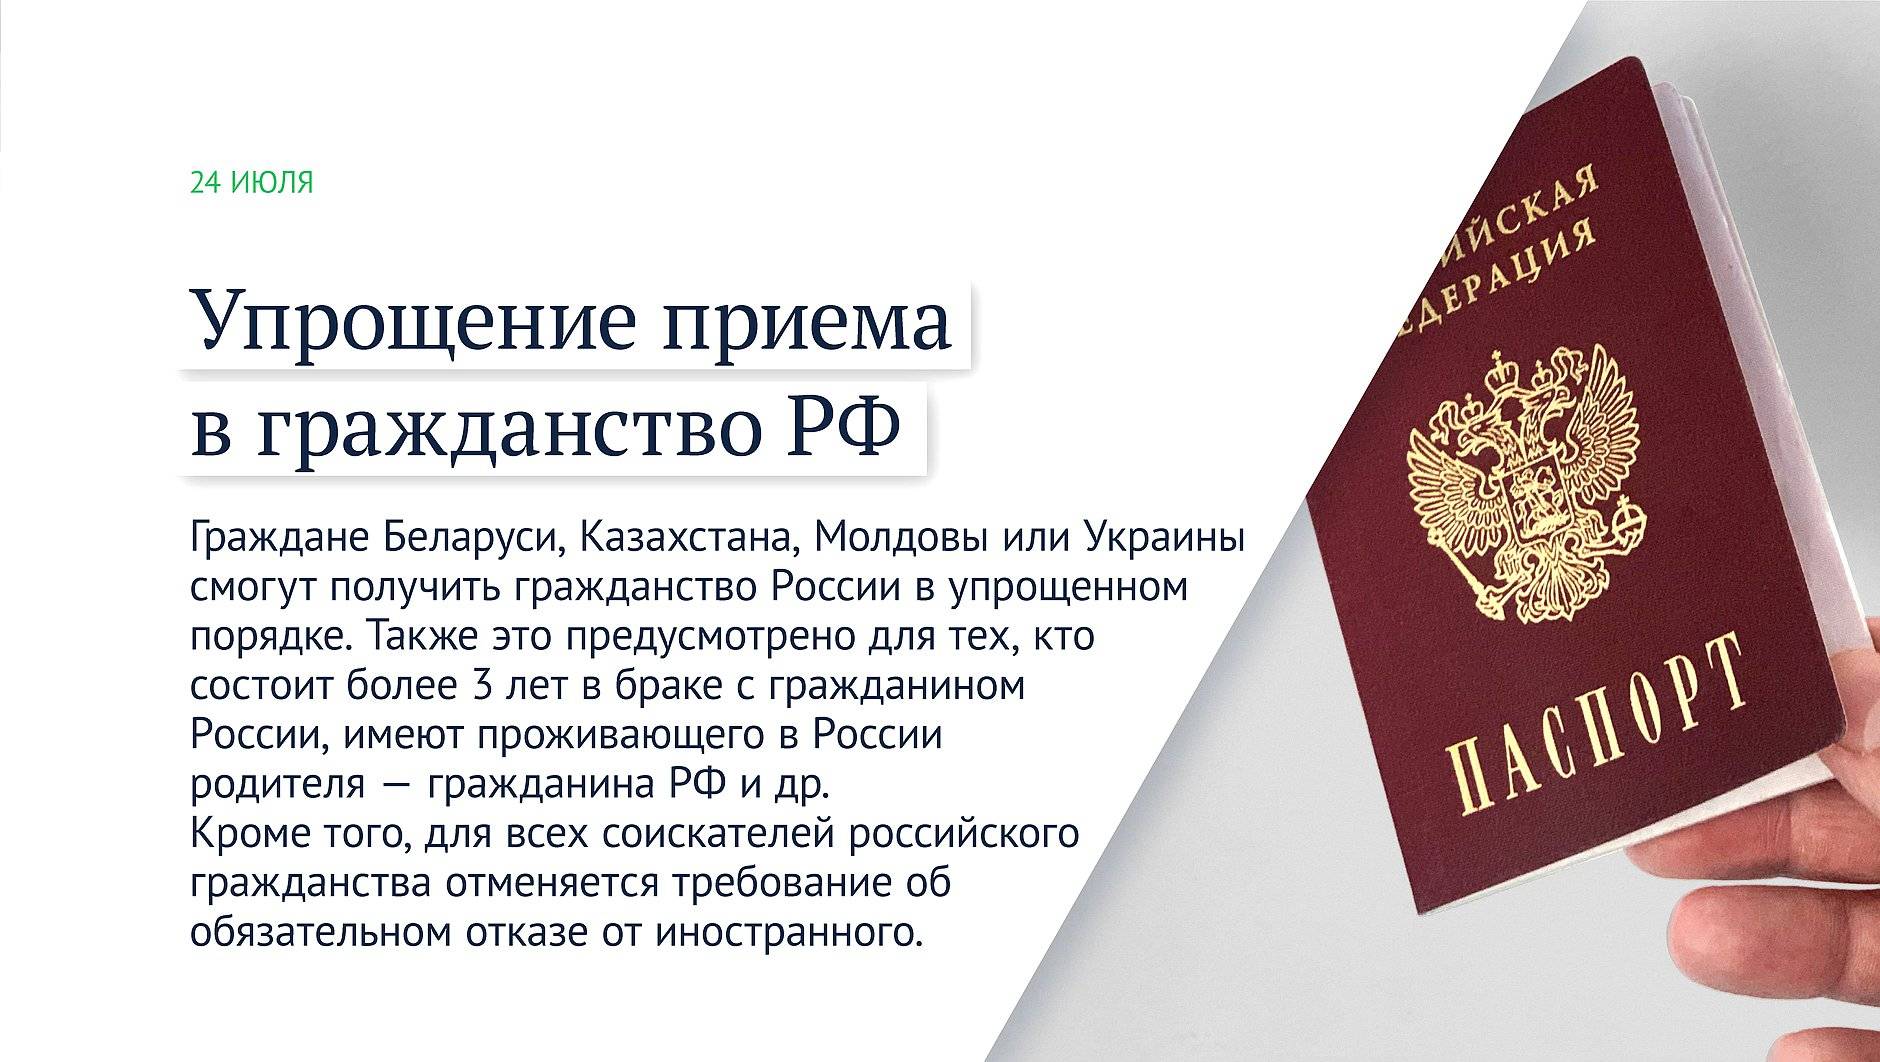 О гражданстве франции: как получить паспорт для россиян, какие нужны документы